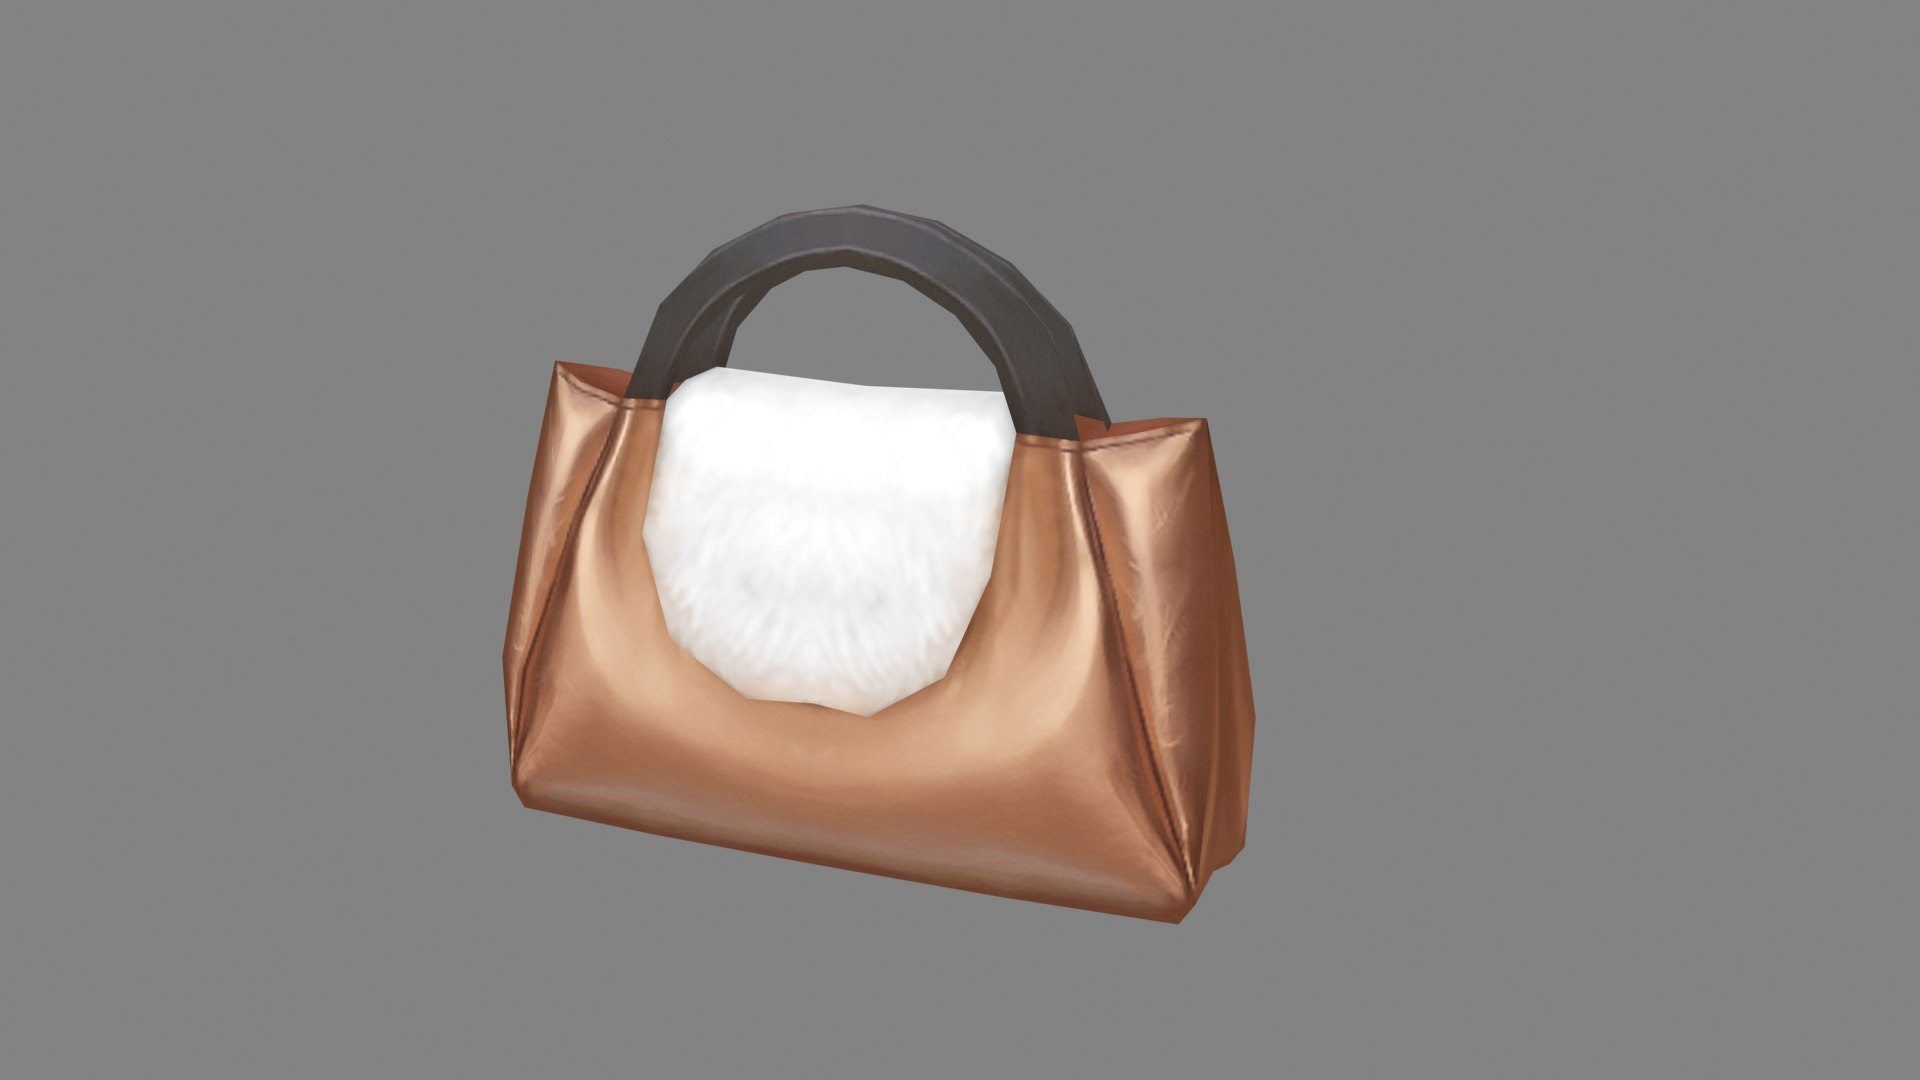 Cartoon brown leather handbag for women 3D model - TurboSquid 1954146